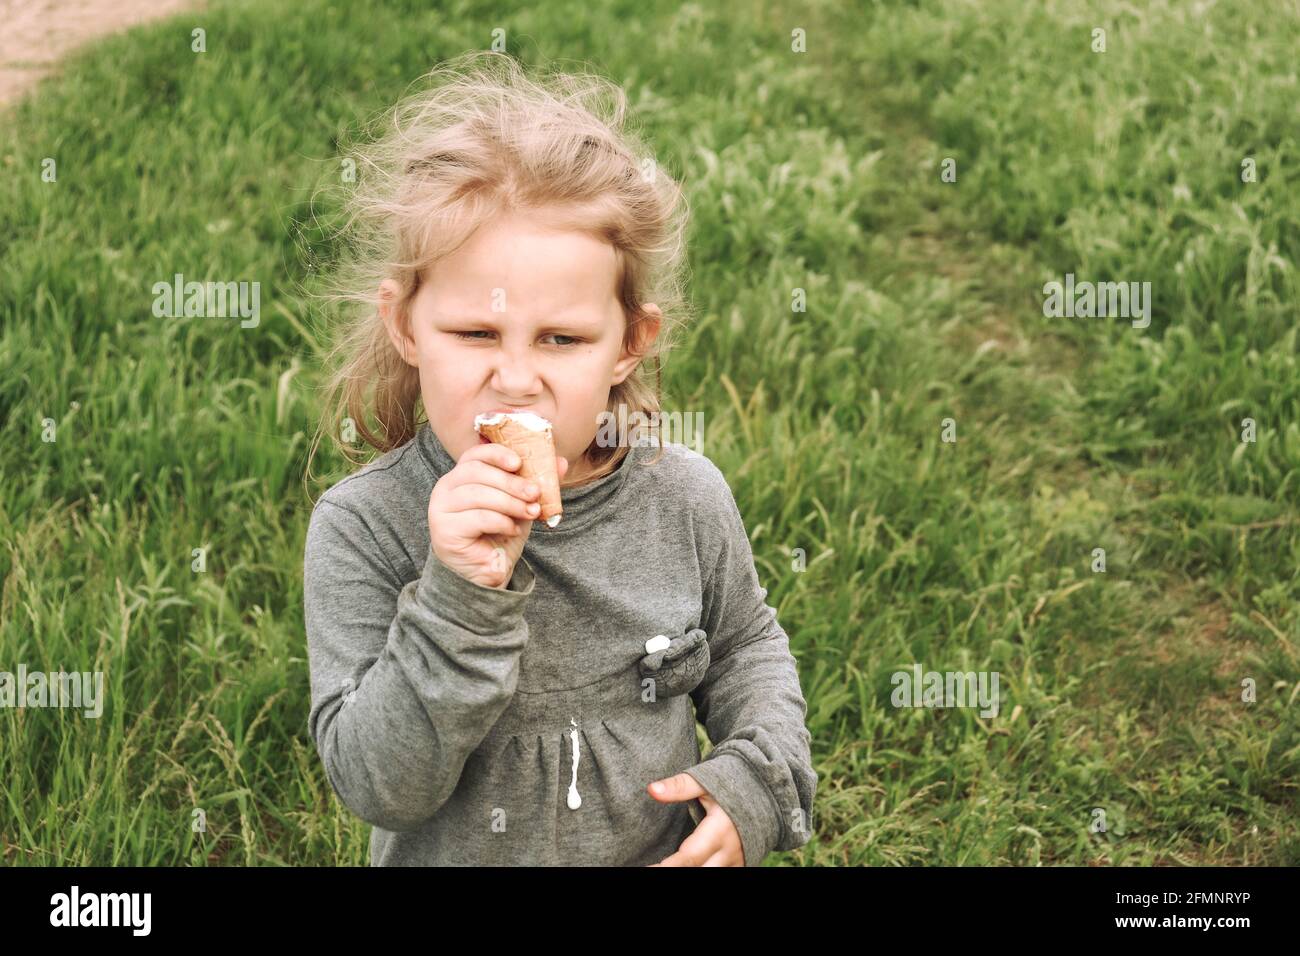 Porträt eines Kindes in der Natur. Speicherplatz kopieren. Schöne blonde Mädchen 4 Jahre alt. Grünes Gras Hintergrund. Das Kind isst kaltes Eis. Stockfoto